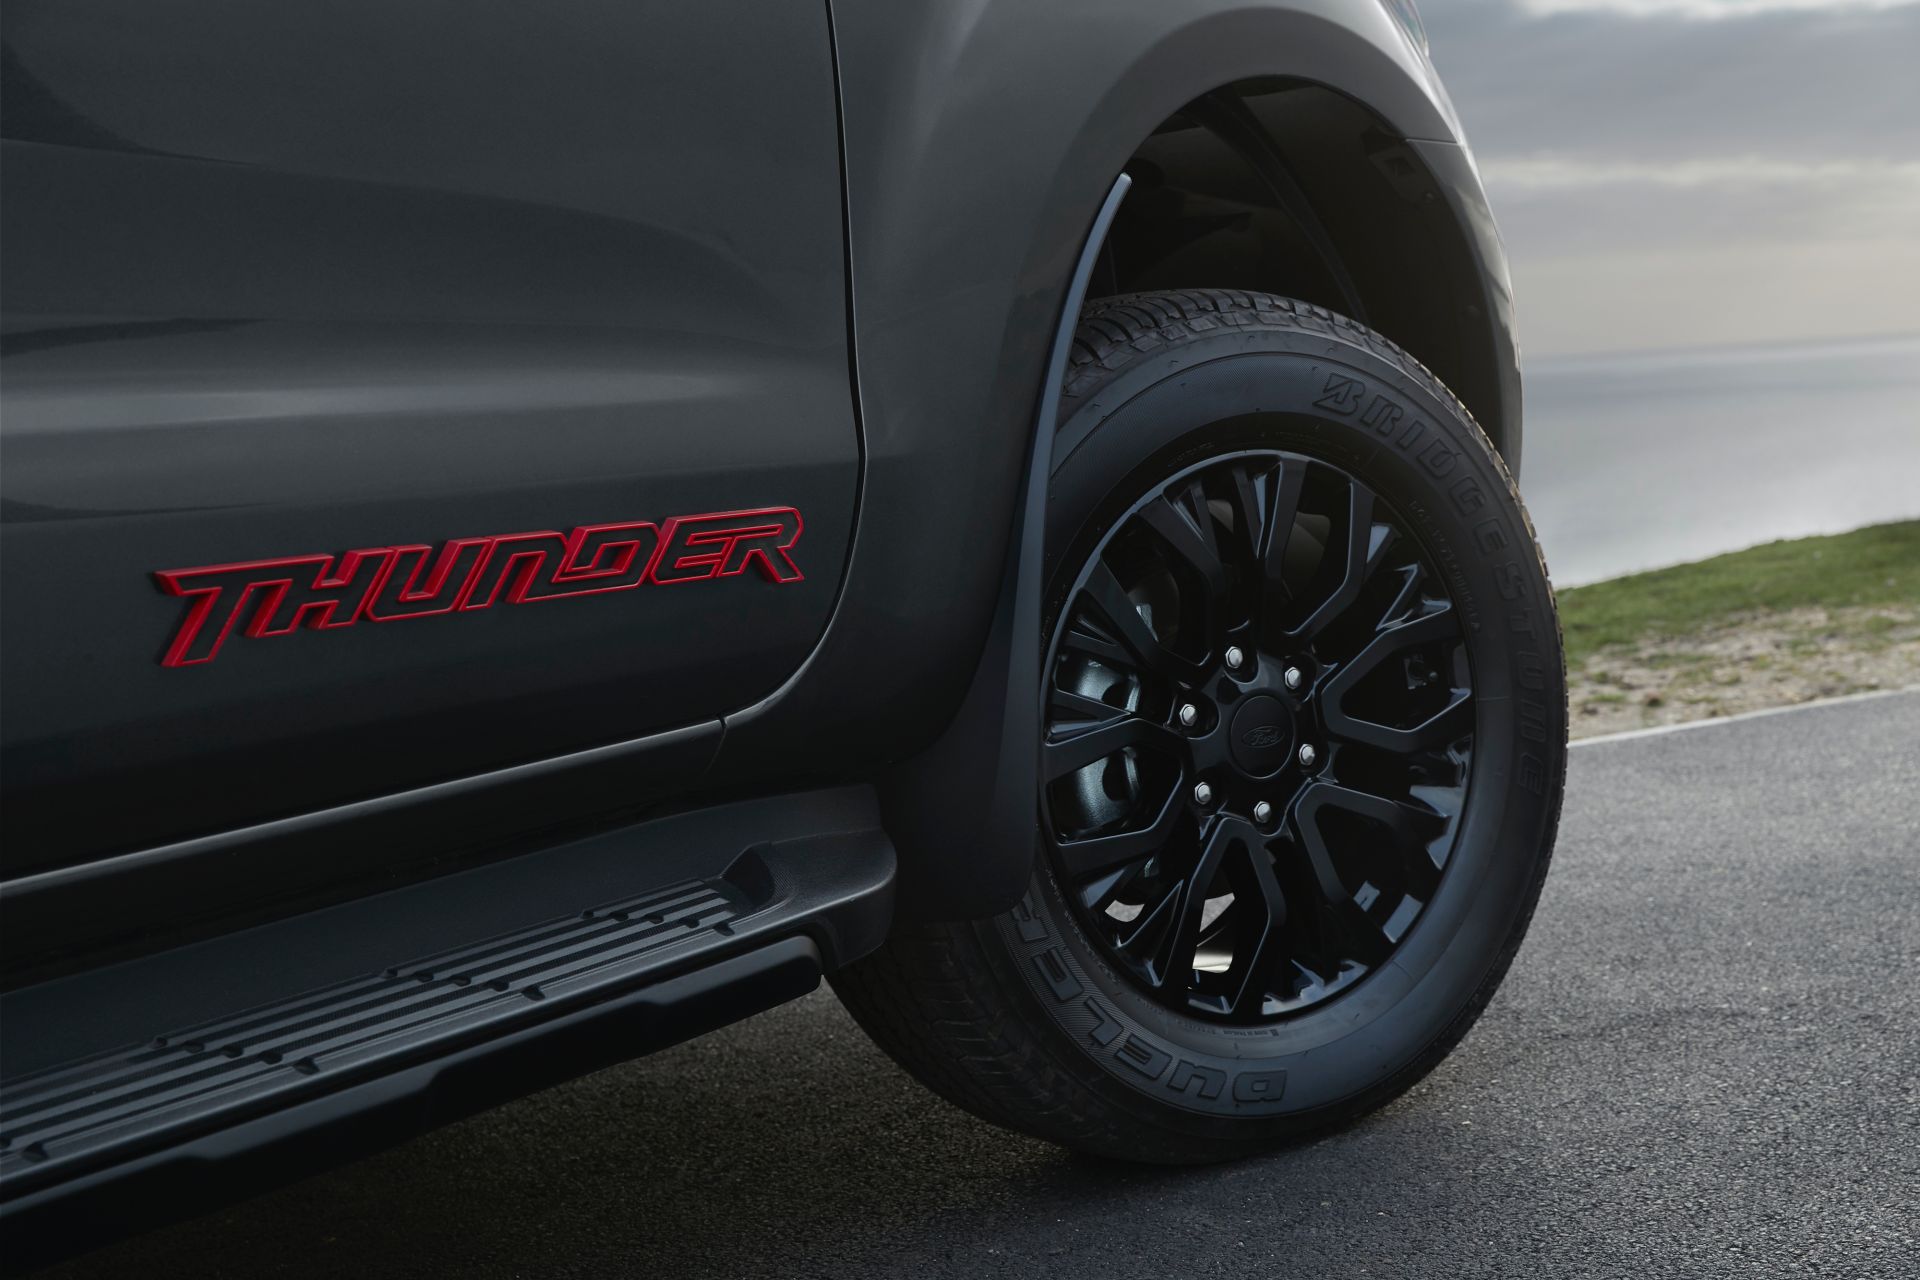 รุ่นพิเศษ Ford Ranger Thunder เฉิดฉายในยุโรป ขายแค่ 4,500 คันเท่านั้น!